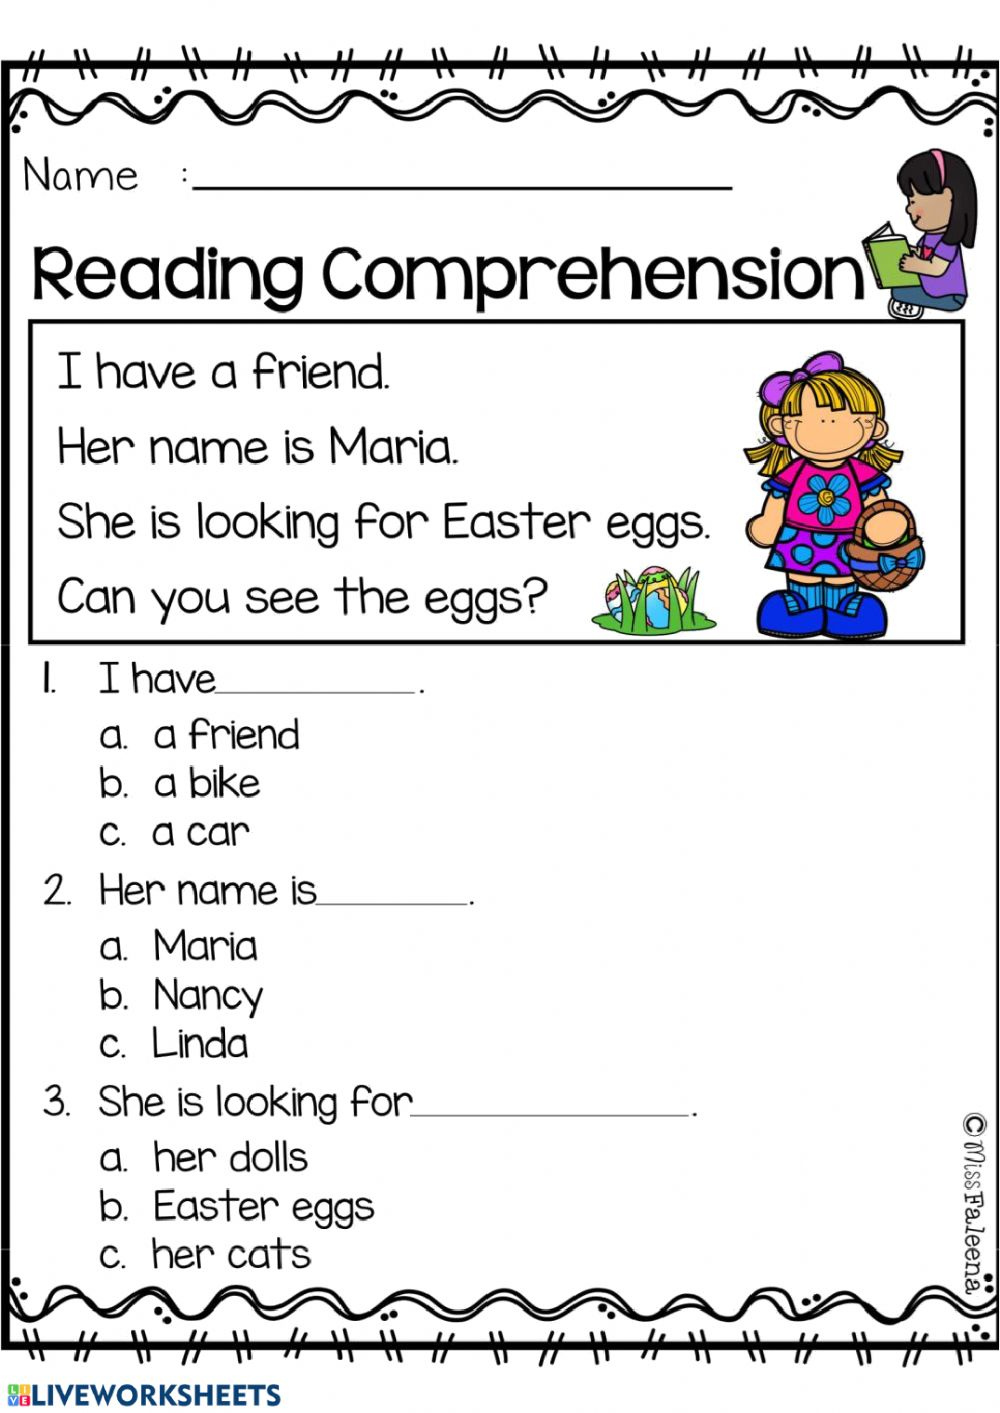 reading-comprehension-worksheet-grade-1-reading-comprehension-worksheets